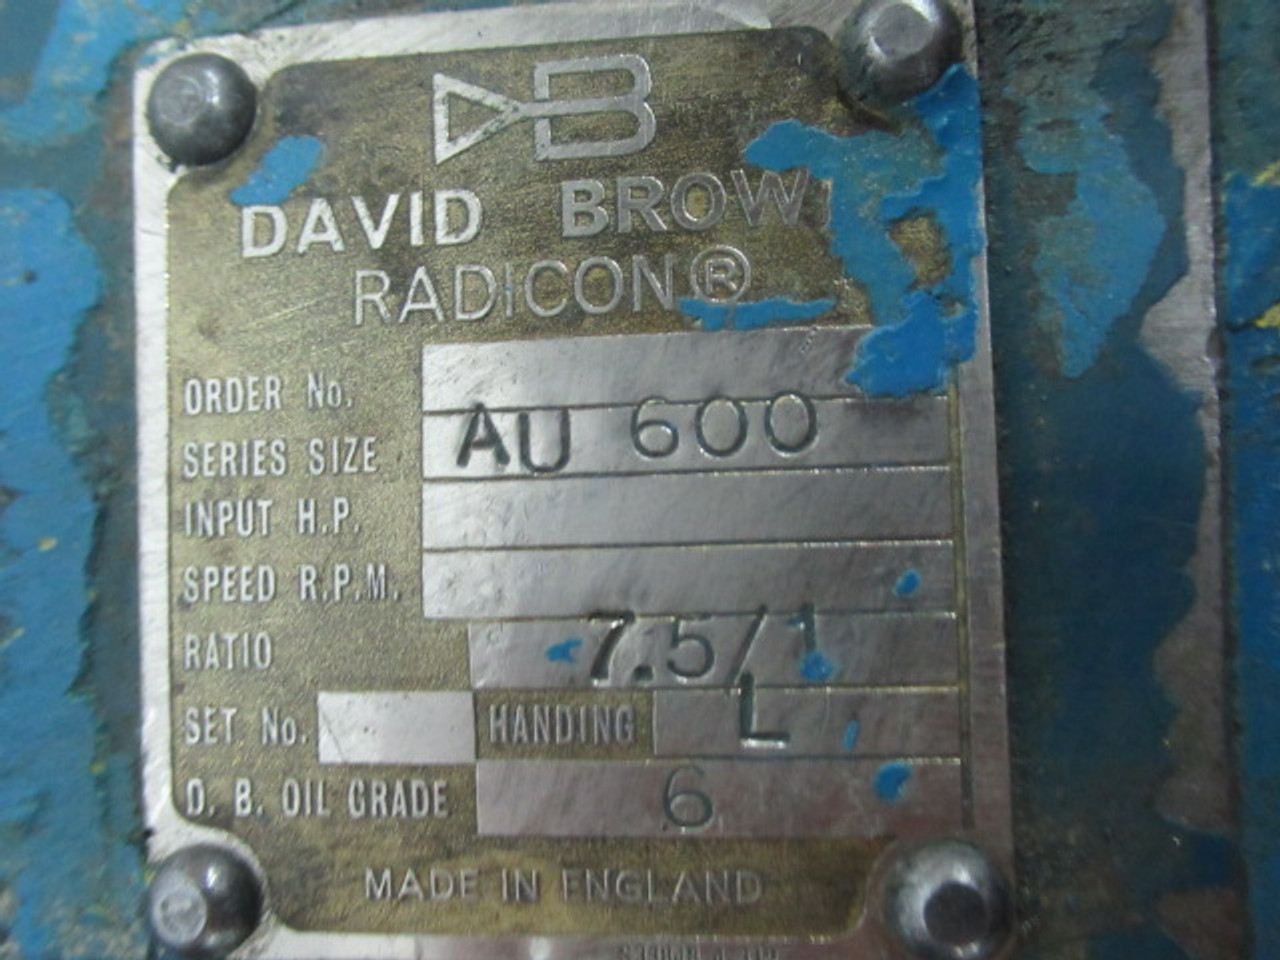 Radicon AU 600 Worm Gear Reducer 7.5:1 Ratio Handing : L USED